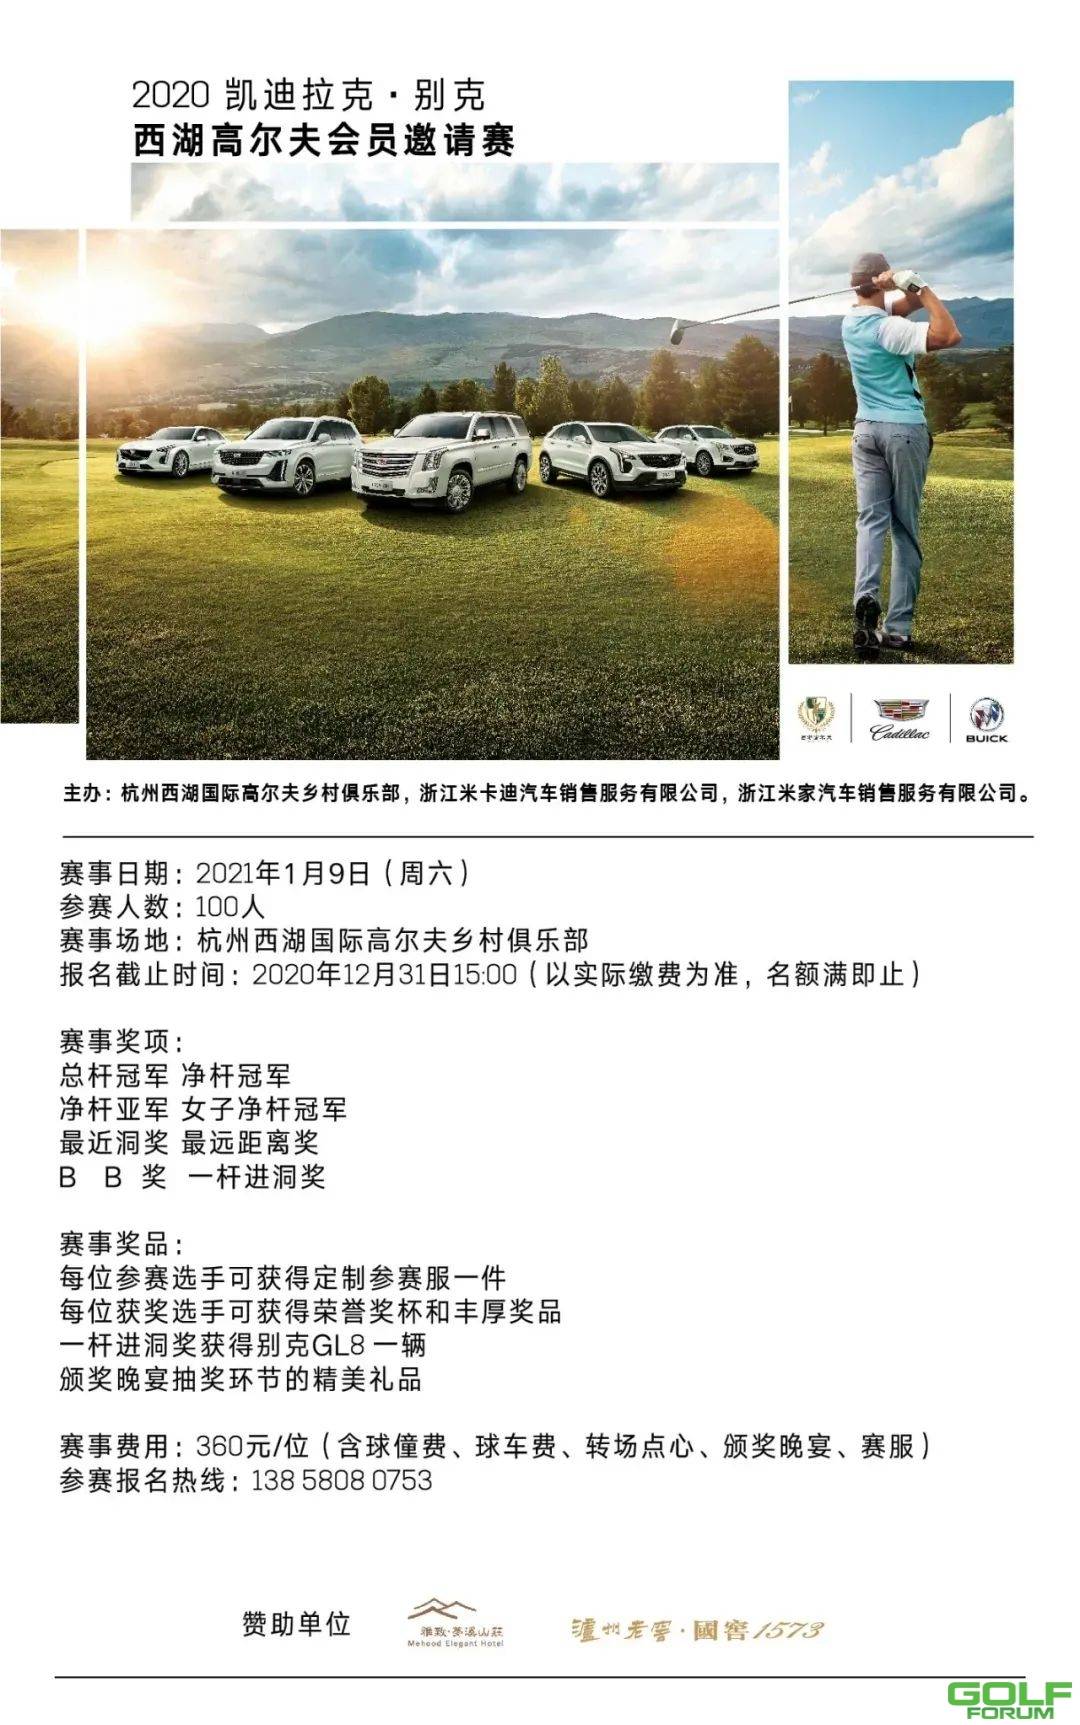 【赛事招募】2020凯迪拉克·别克西湖高尔夫会员邀请赛招募中~ ...